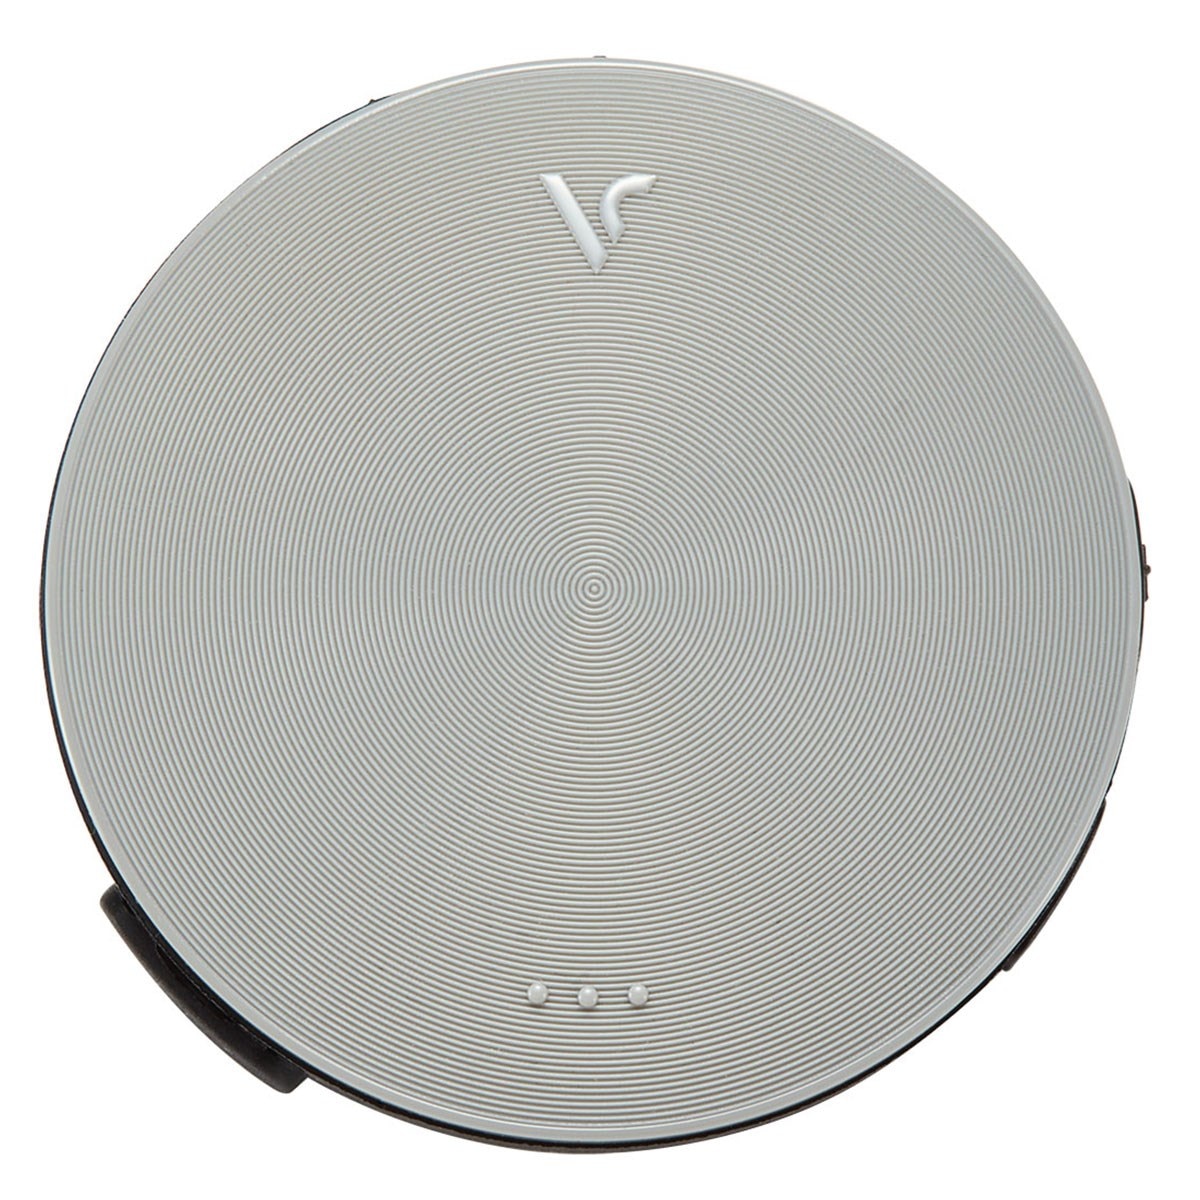 ボイスキャディ VC4 エイミング 音声型GPS距離計(距離測定器)|Voice